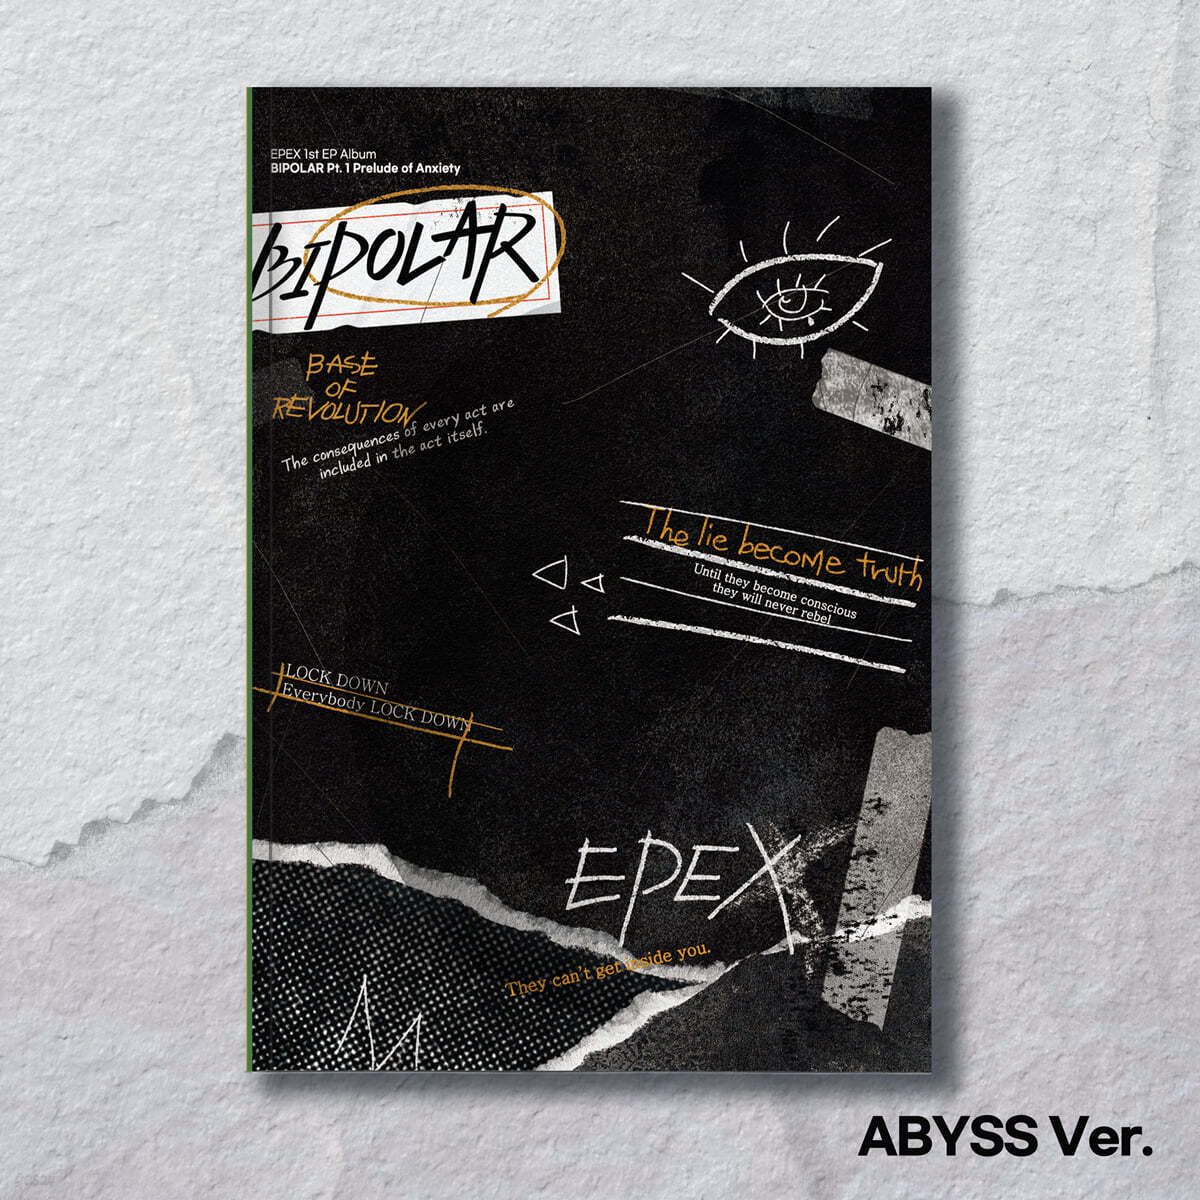 [응모상품] EPEX (이펙스) - EPEX 1st EP Album &#39;Bipolar Pt.1 불안의 서&#39; [ABYSS ver.]